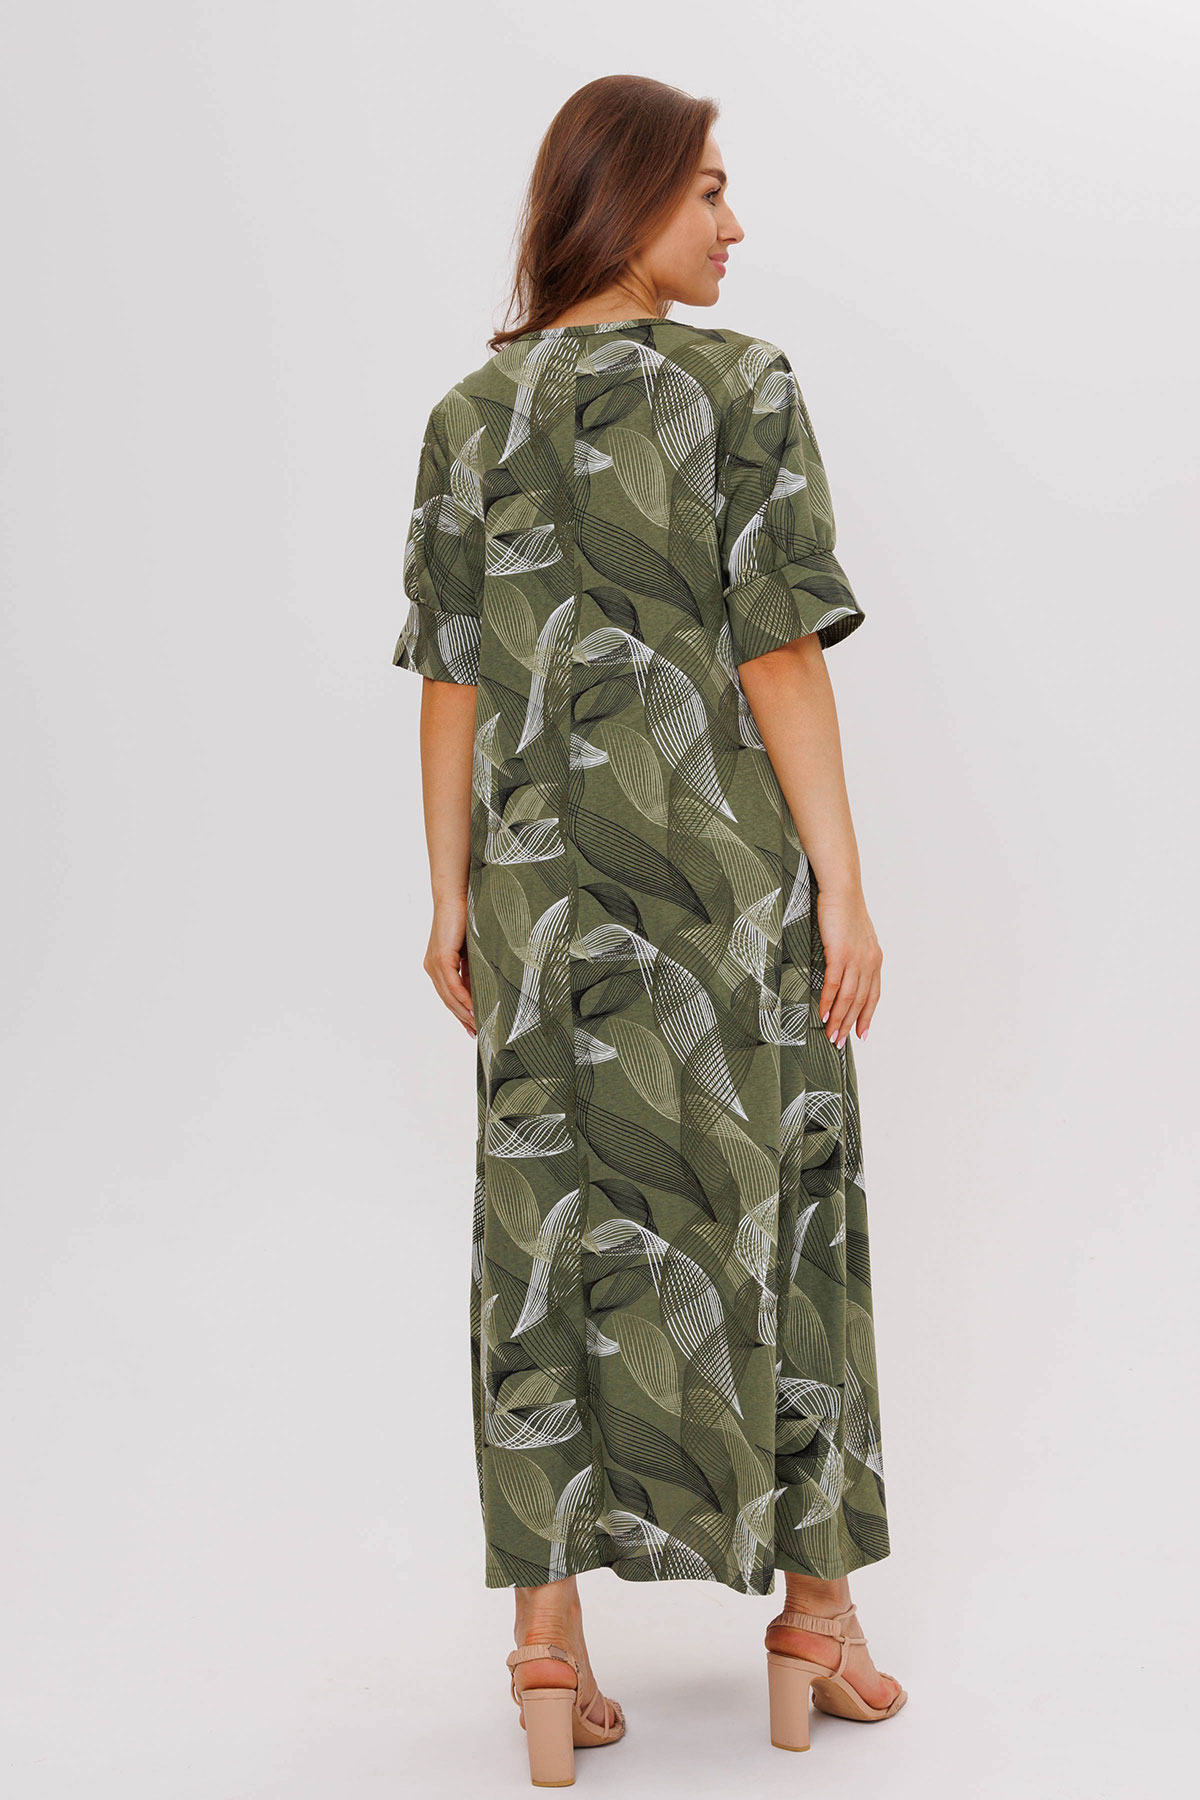 Жен. платье повседневное арт. 23-0541 Зеленый р. 54 Моделлини, размер 54 - фото 9